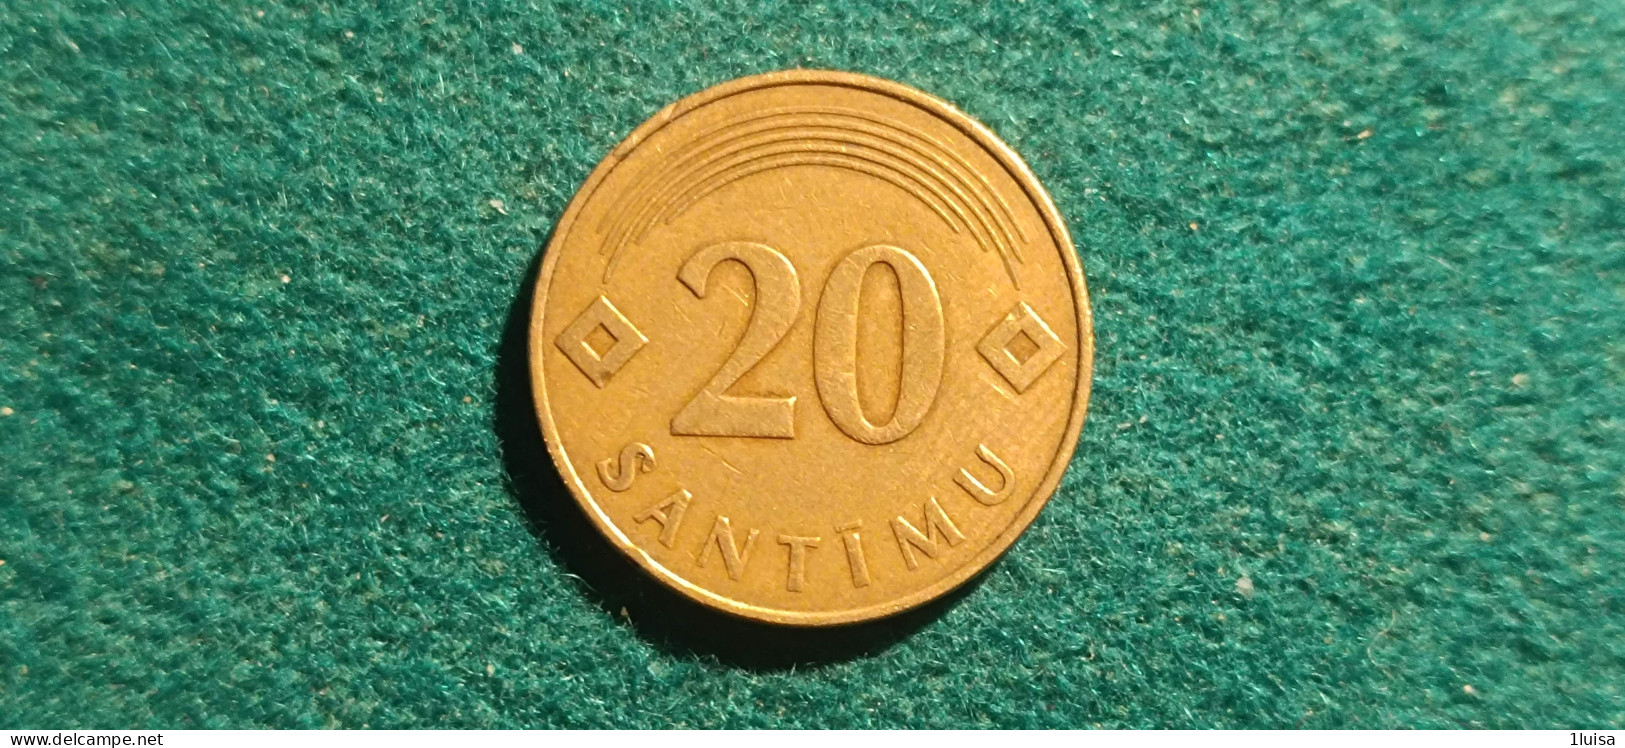 LITUANIA 20 SANTIMU 1992 - Litauen